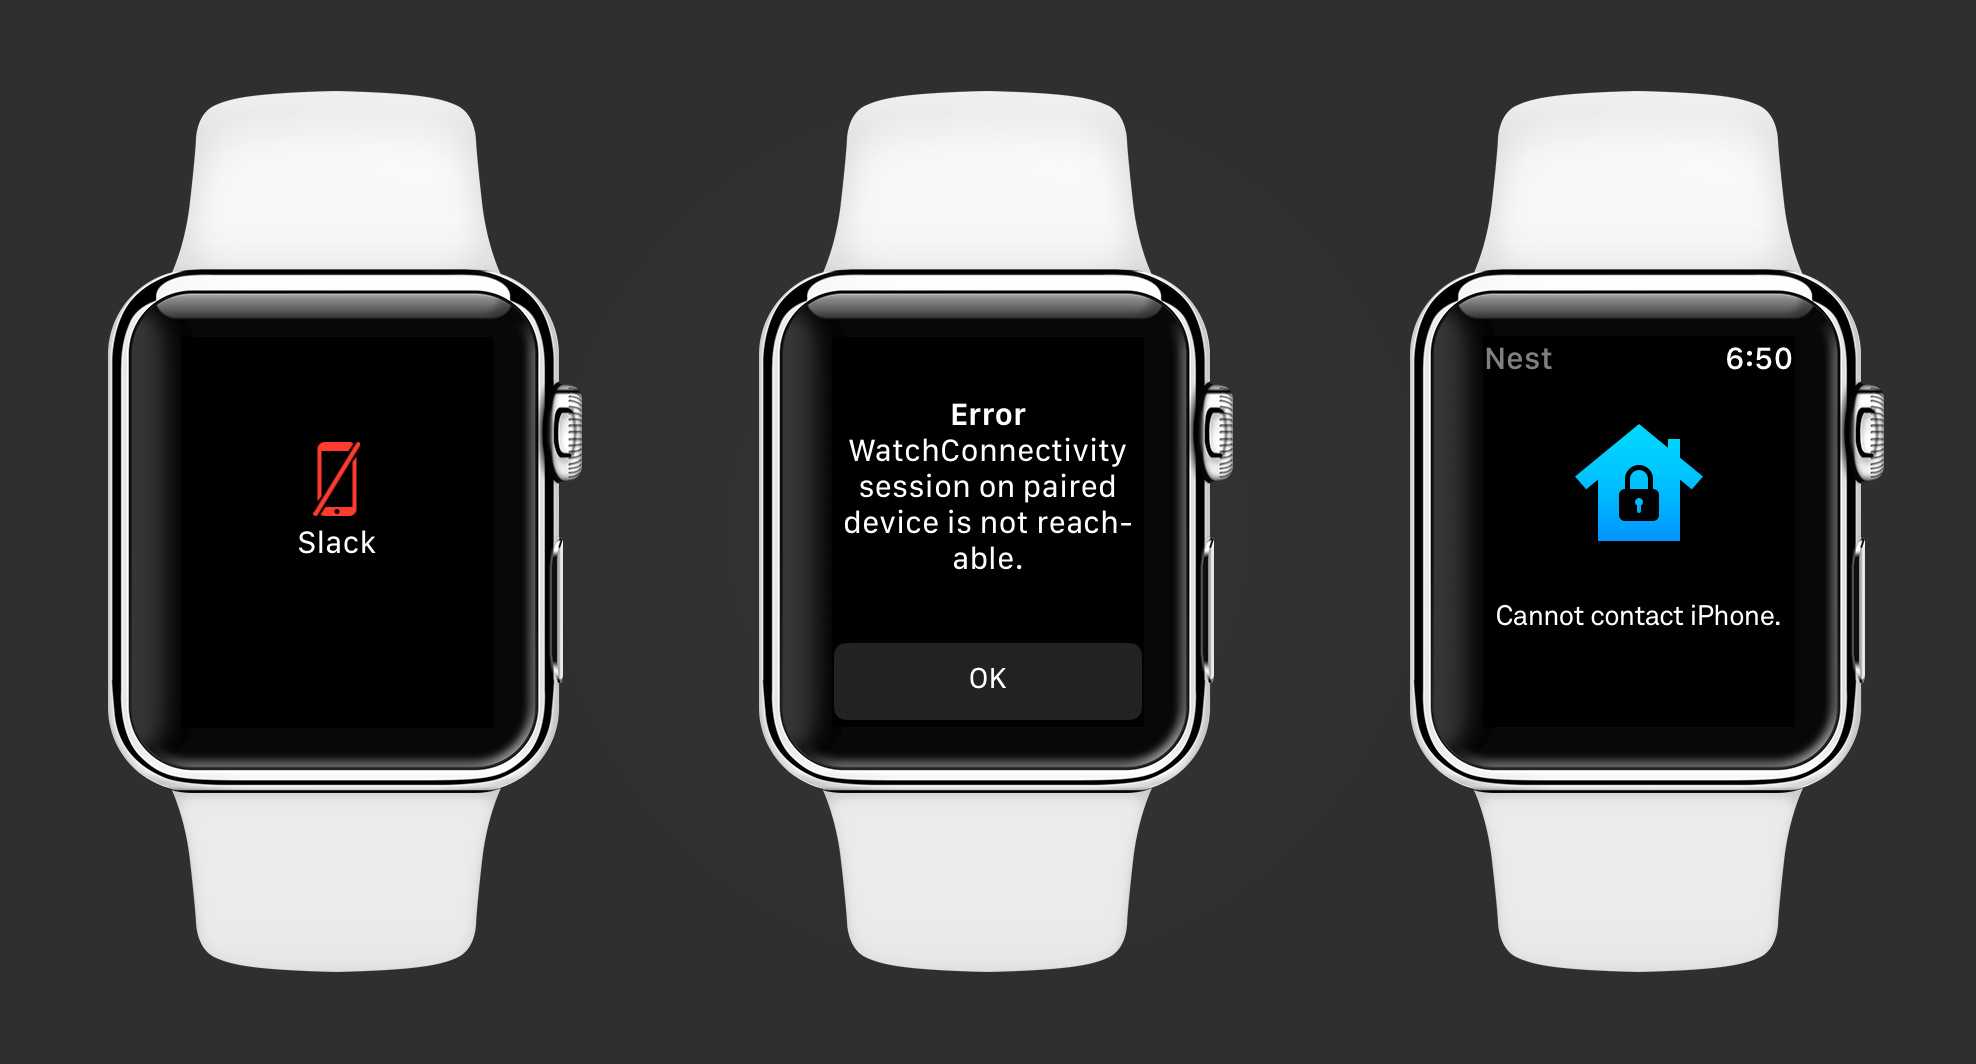 Подключение apple watch к android-устройствам: совместить несовместимое